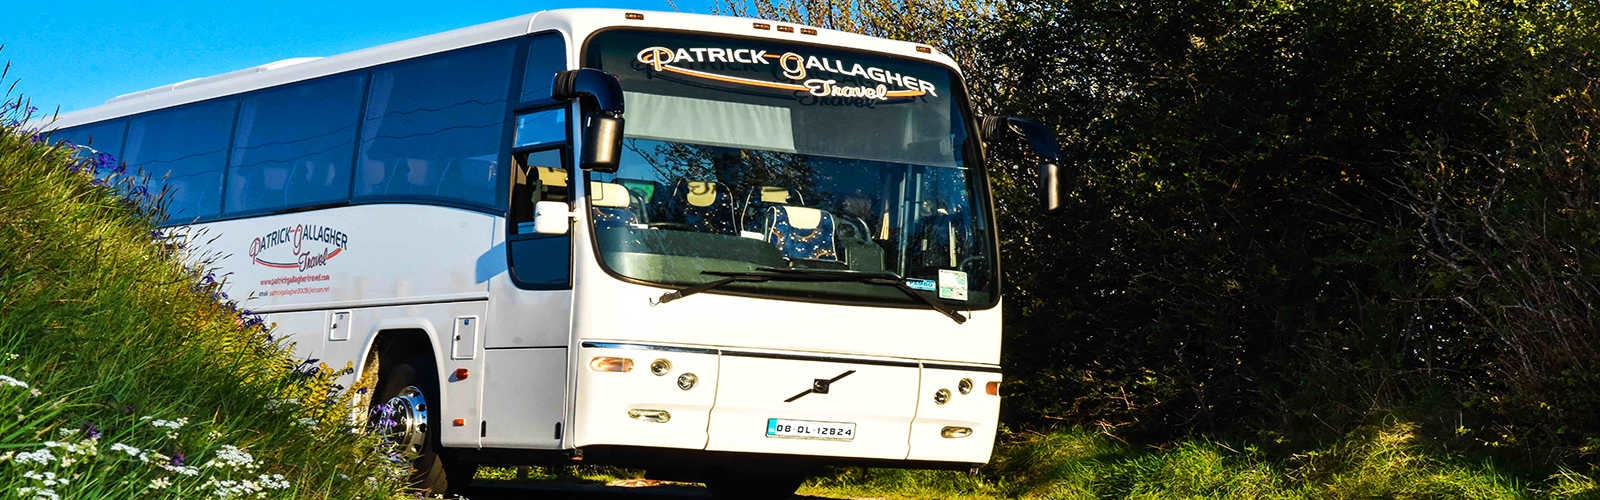 Patrick Gallagher Travel Bus Slider03